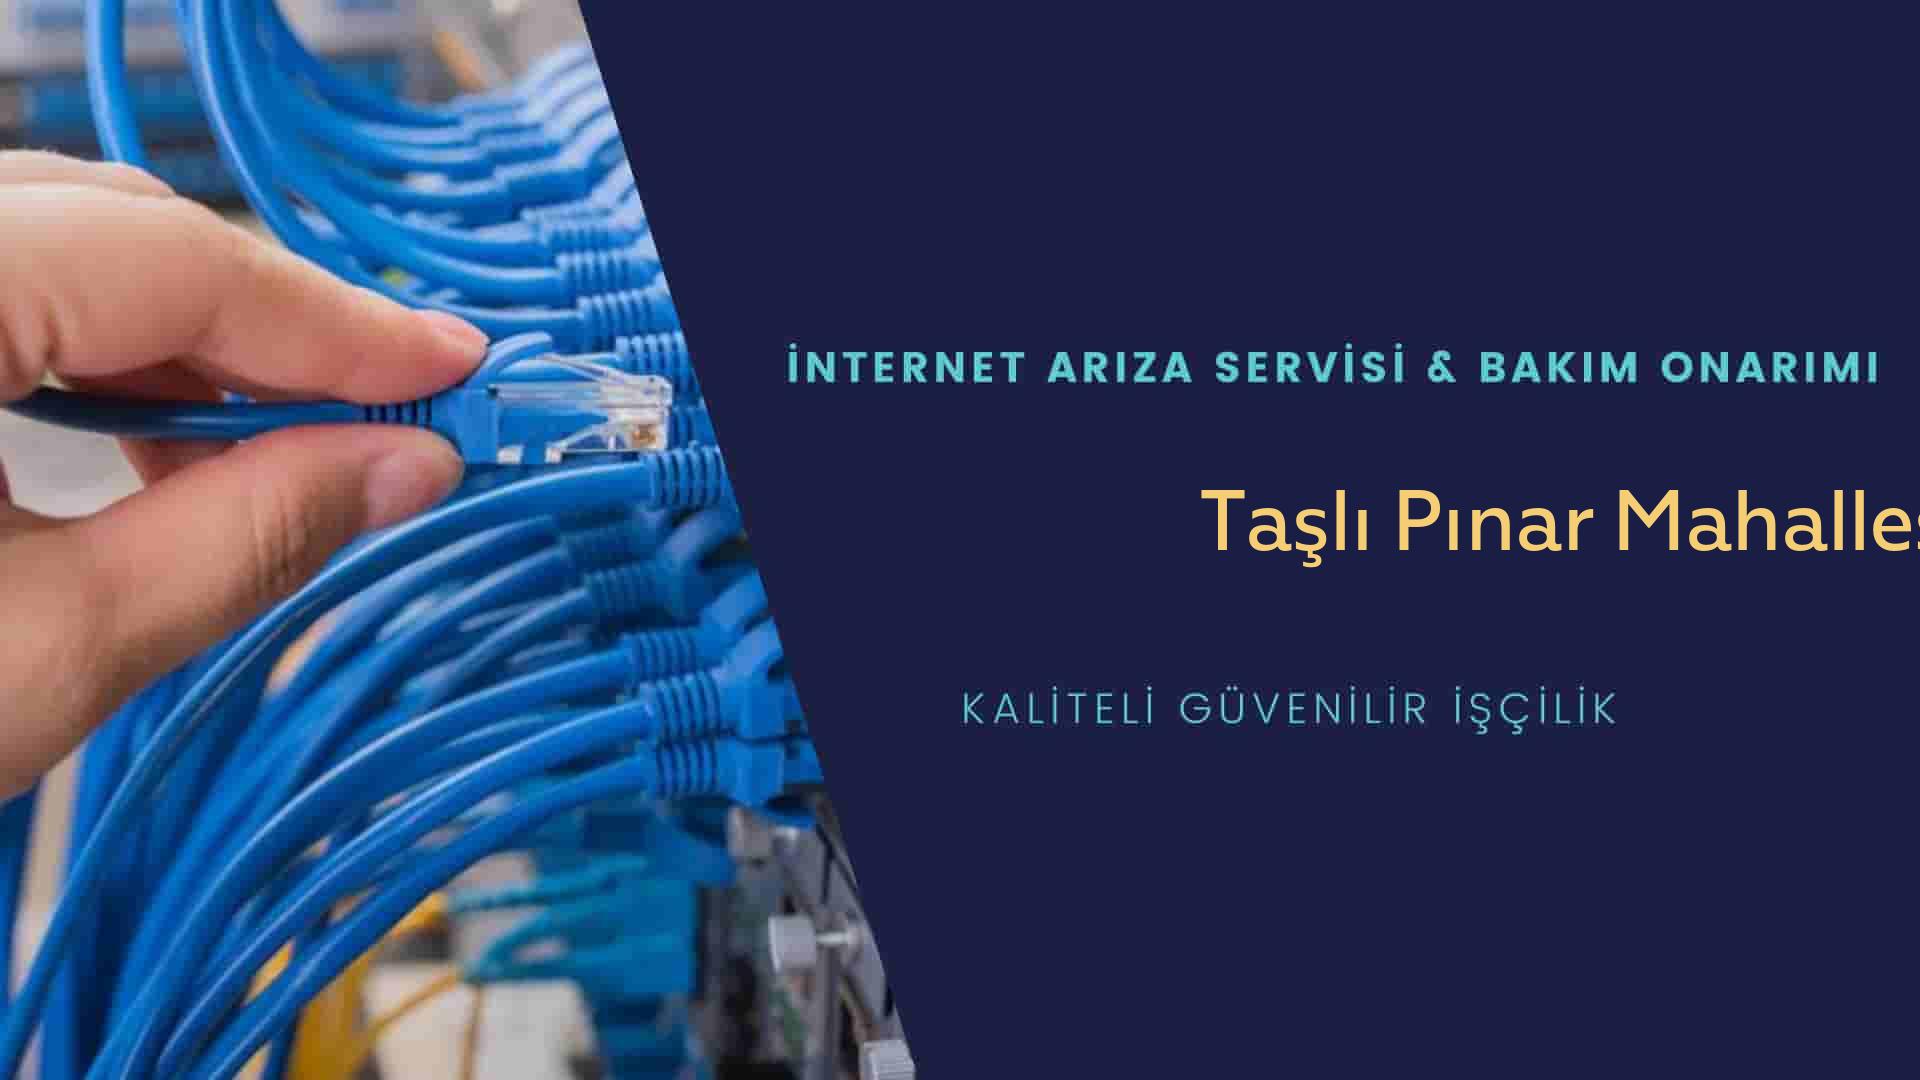 Taşlı Pınar Mahallesi internet kablosu çekimi yapan yerler veya elektrikçiler mi? arıyorsunuz doğru yerdesiniz o zaman sizlere 7/24 yardımcı olacak profesyonel ustalarımız bir telefon kadar yakındır size.